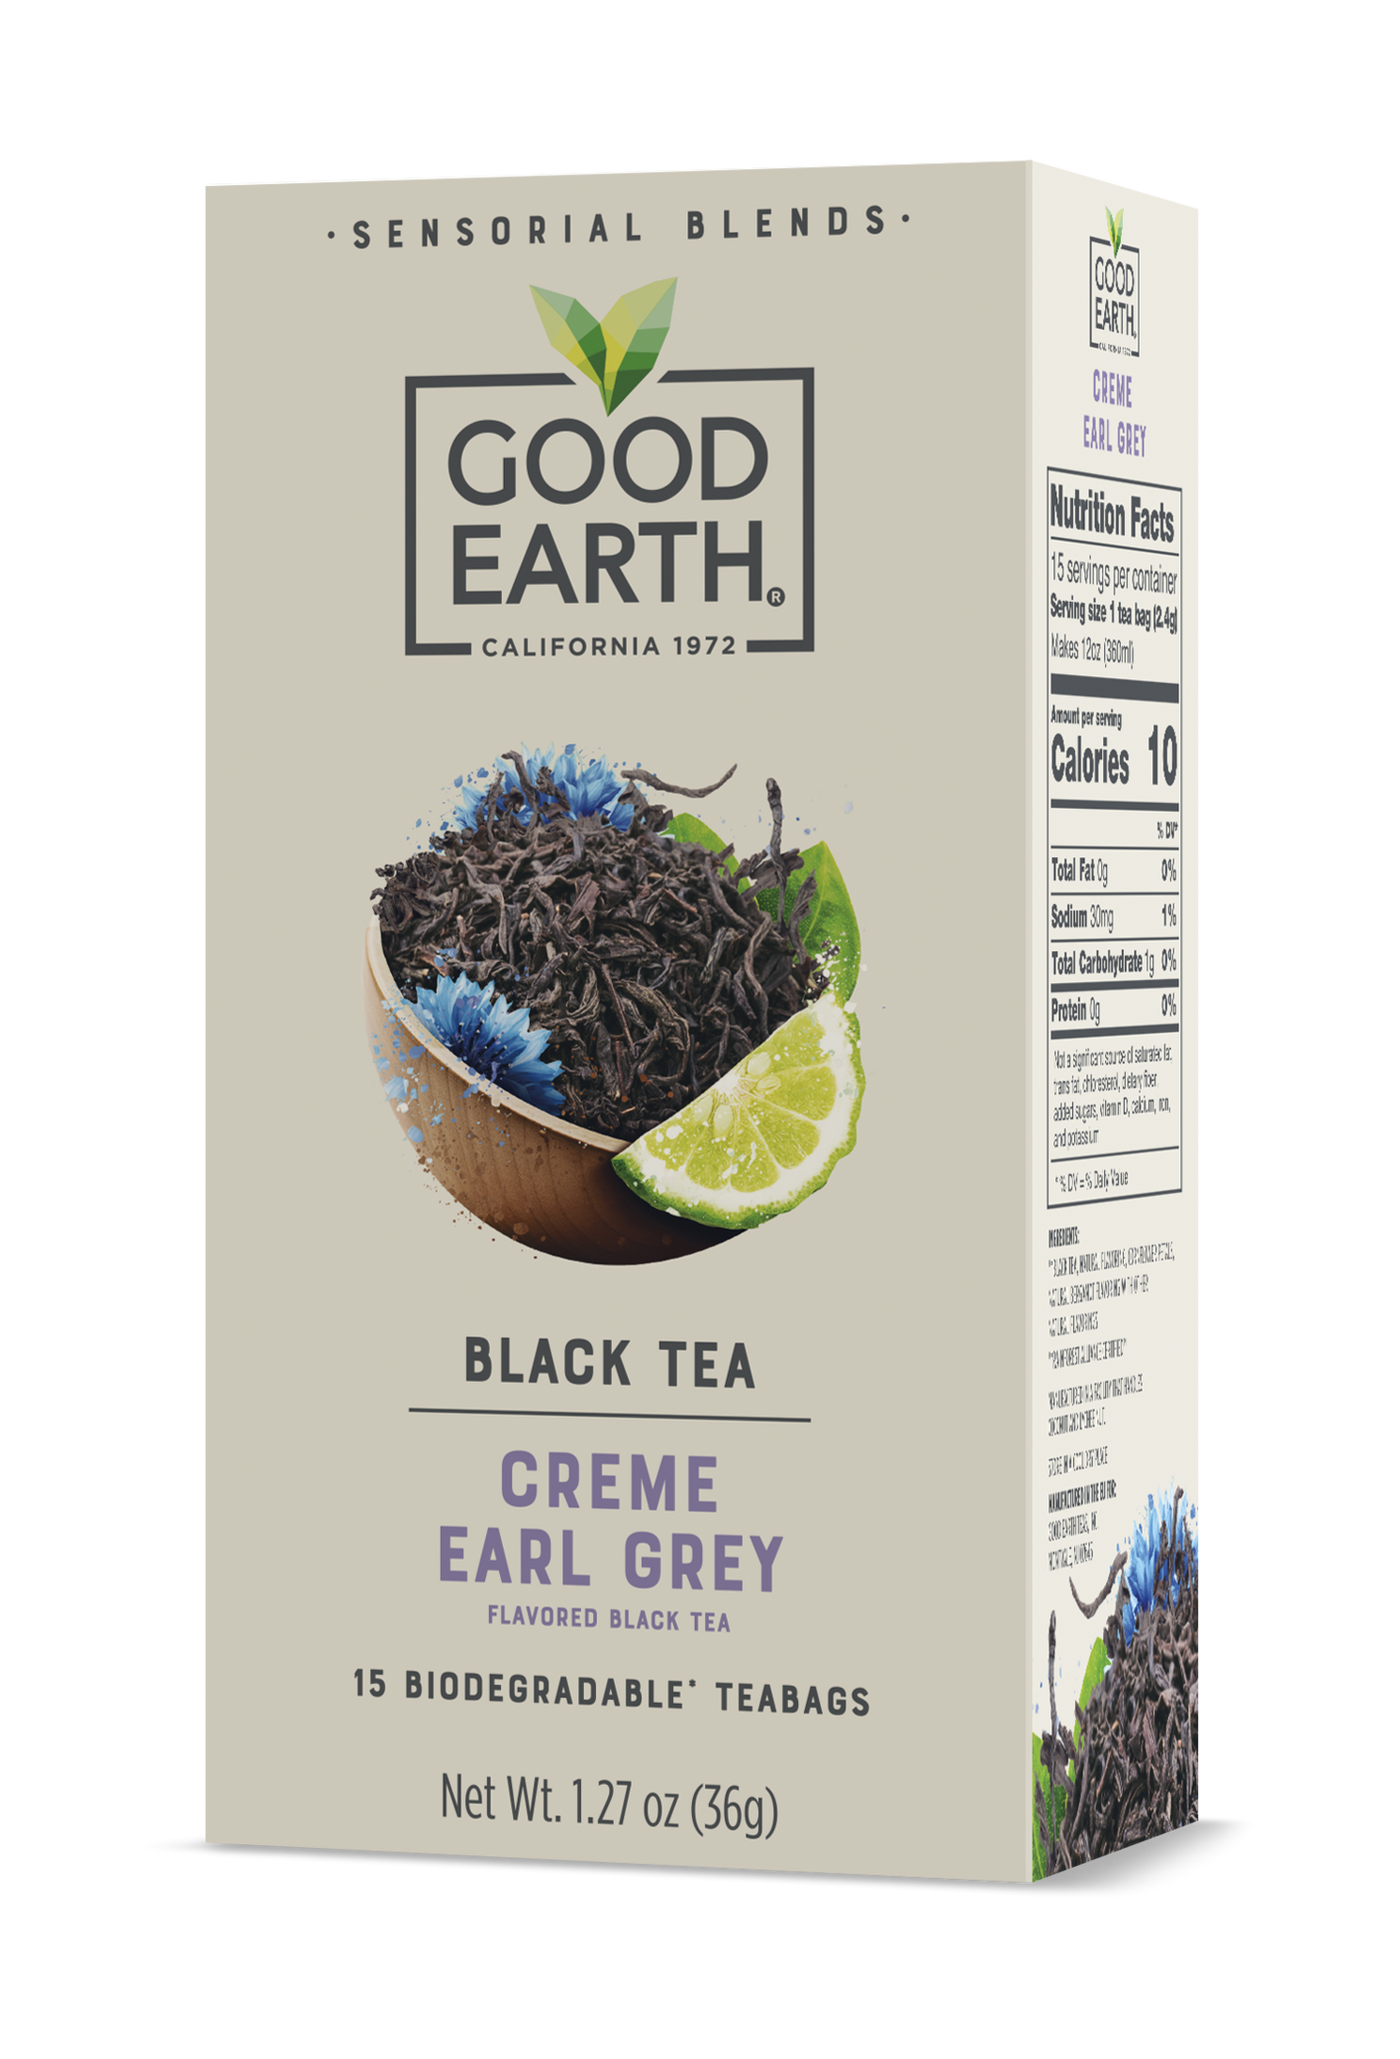 Creme Earl Grey packaging